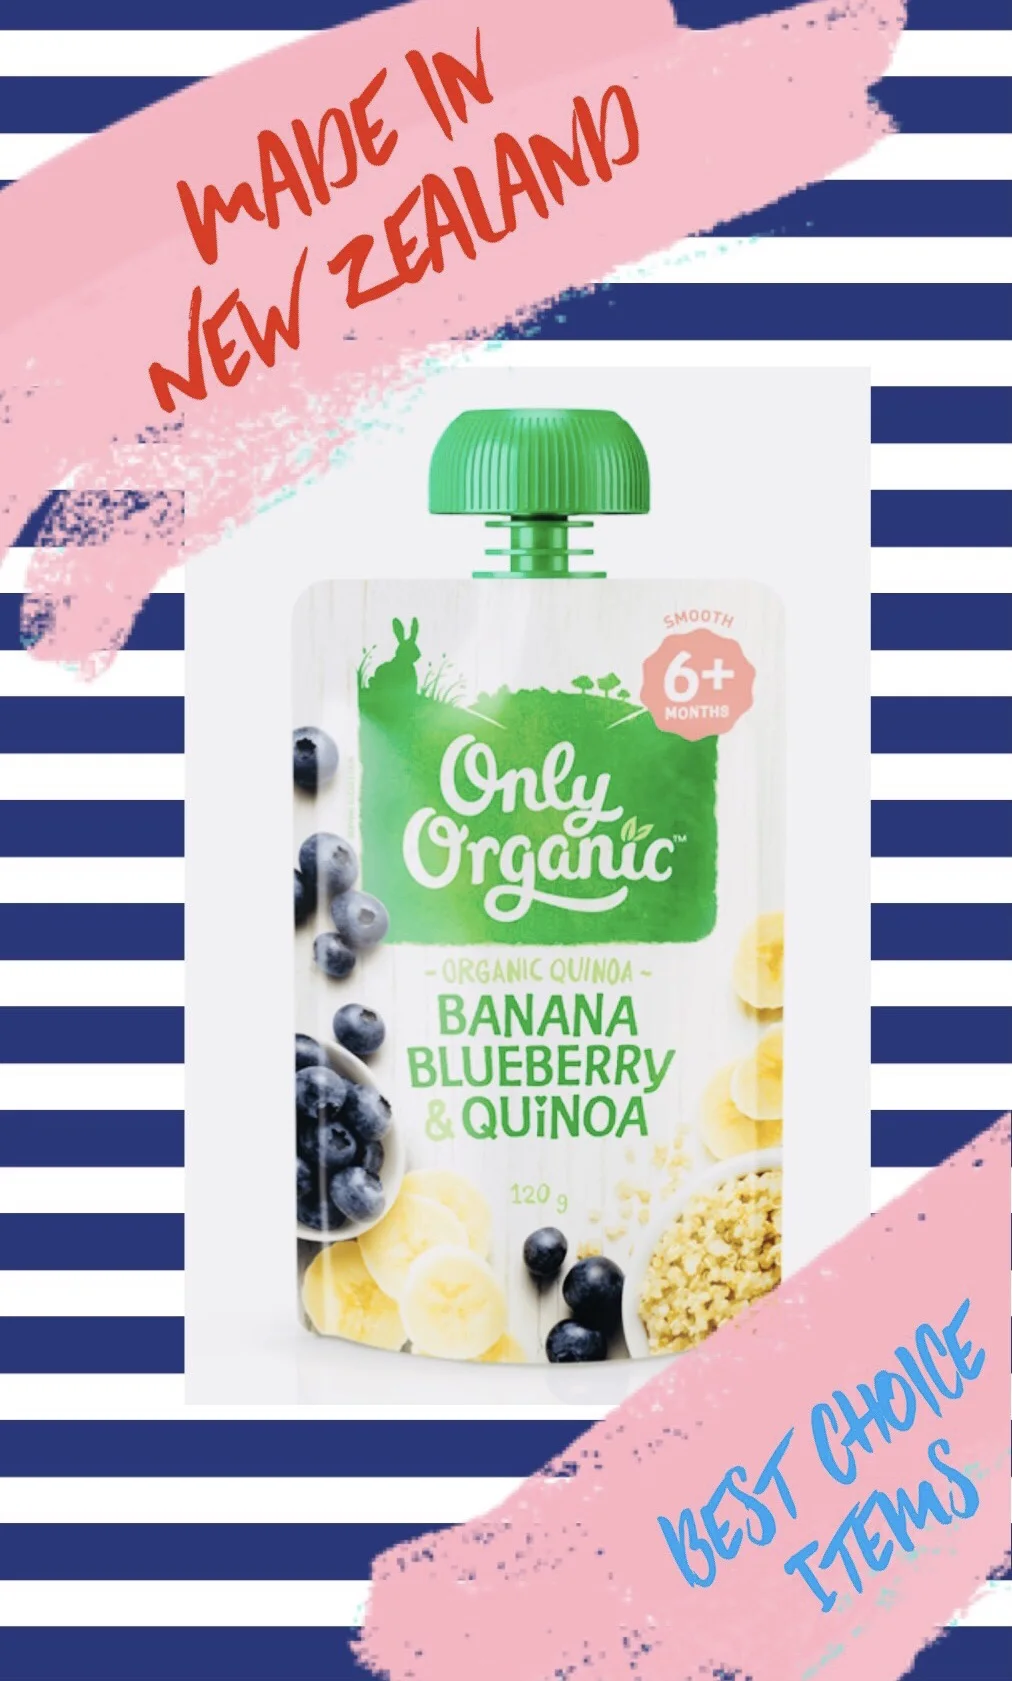 Only Organic Banana Blueberry & Quinoa 6 + months 125g